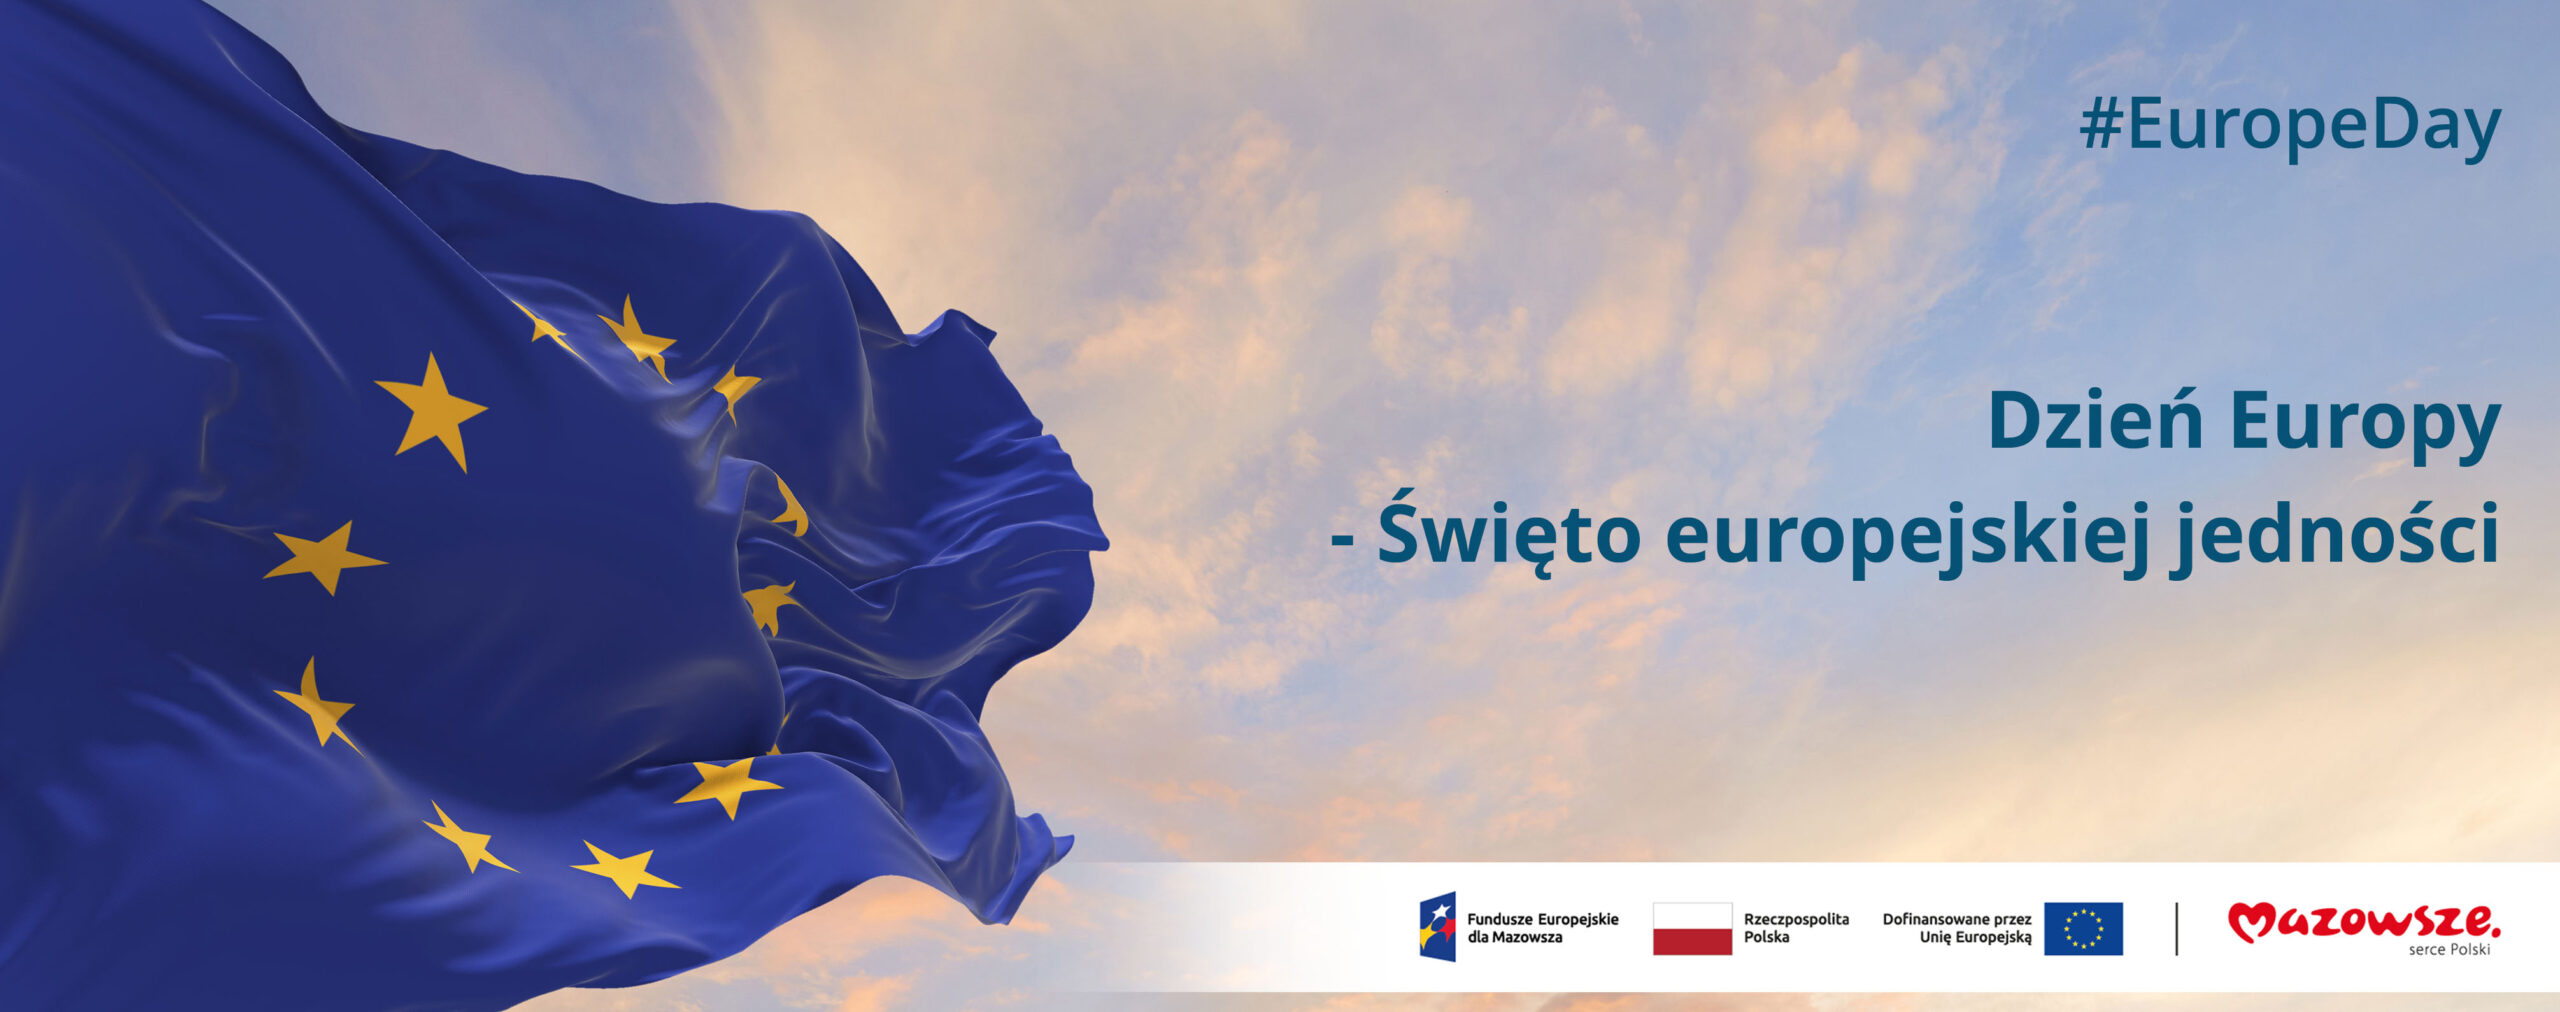 Hasło "Dzień Europy - Święto europejskiej jedności #EuropeDay", a w tle flaga Unii Europejskiej przedstawiająca złote gwiazdy na niebieskim tle